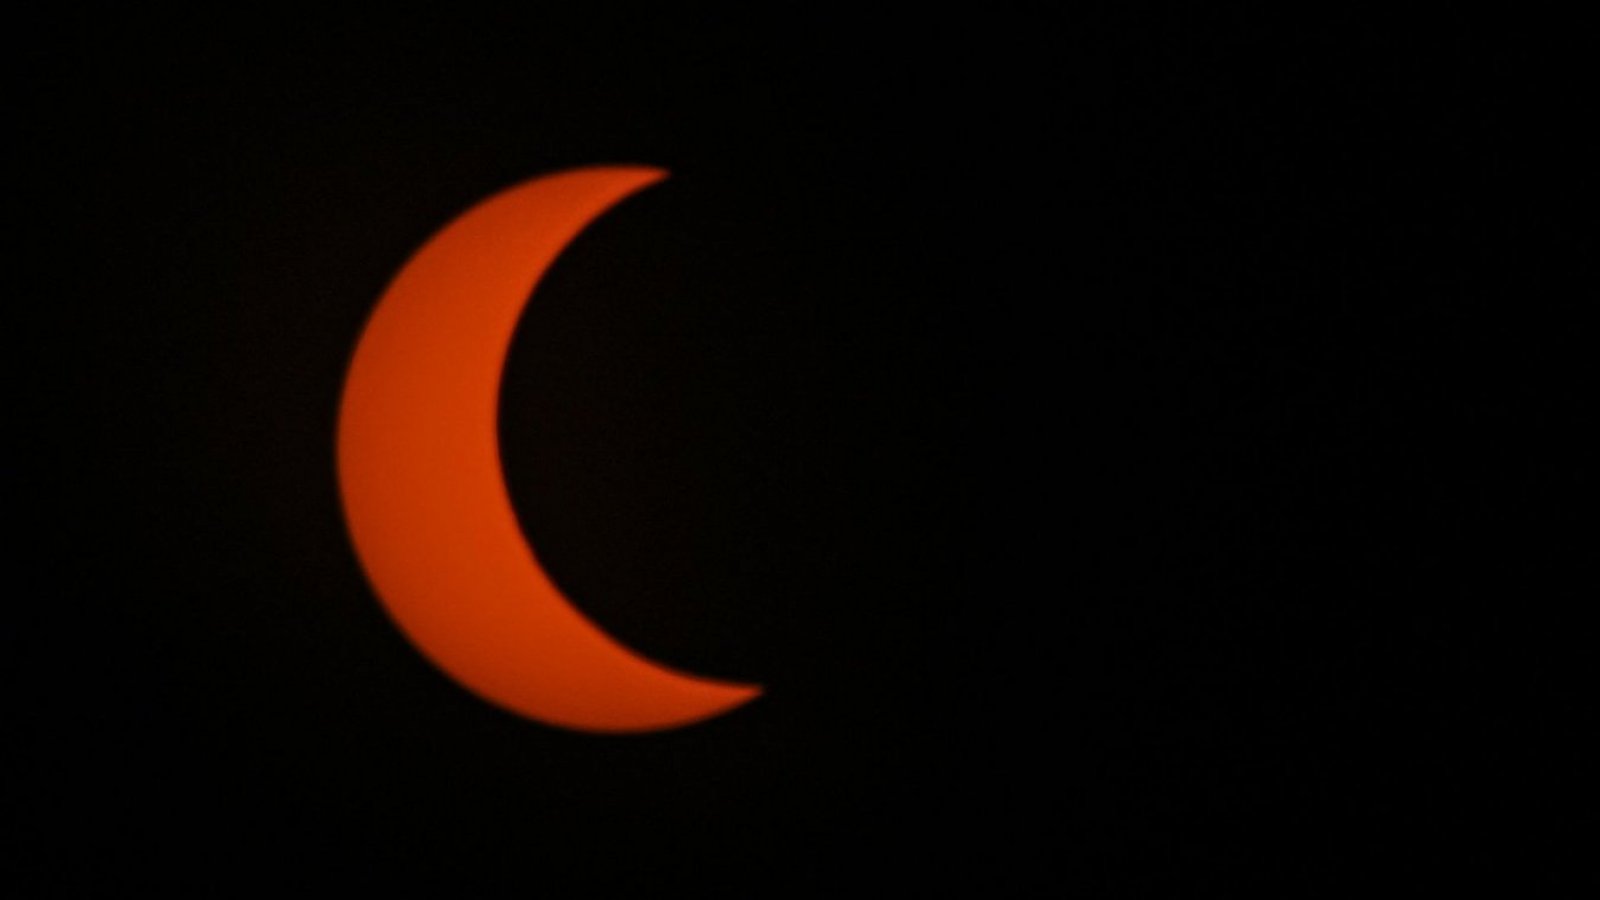 Eclipse solar total: La NASA hará experimentos para estudiar la atmósfera